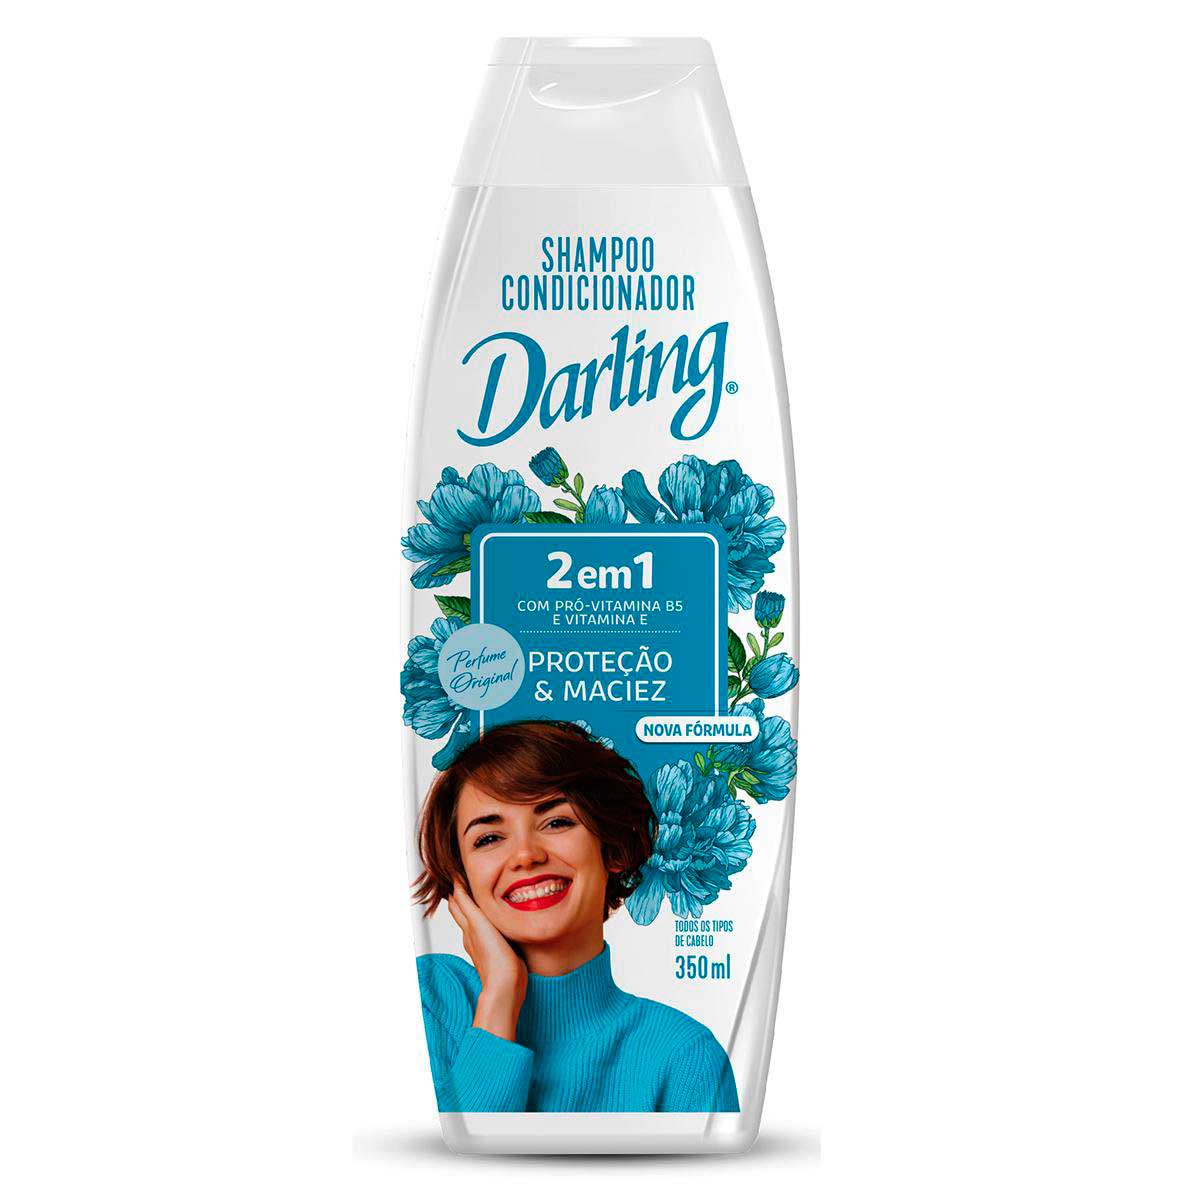 shampoo-e-condicionador-darling-2-em-1-350ml-1.jpg